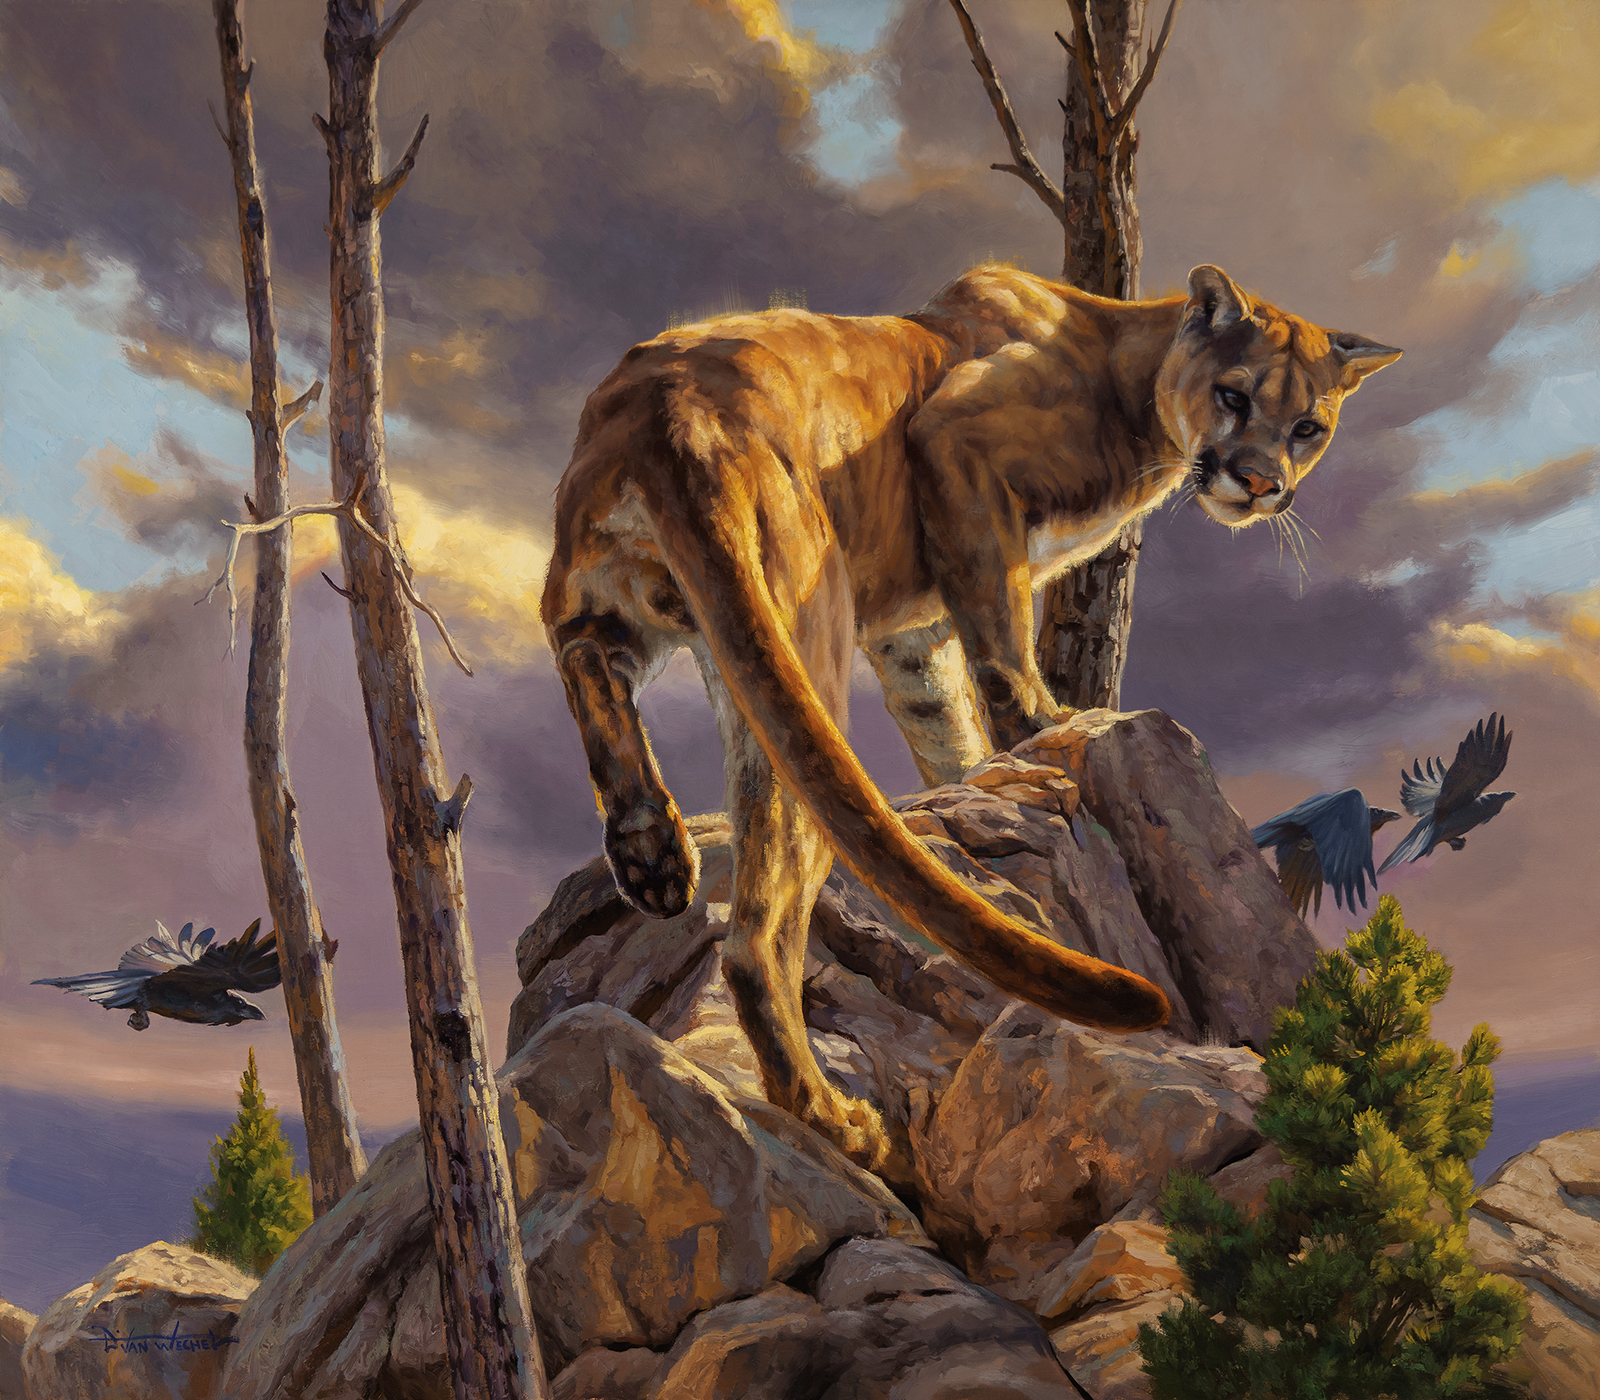 realist wildlife painting - Dustin Van Wechel, “The Catbird Seat," oil, 35 x 40 in.